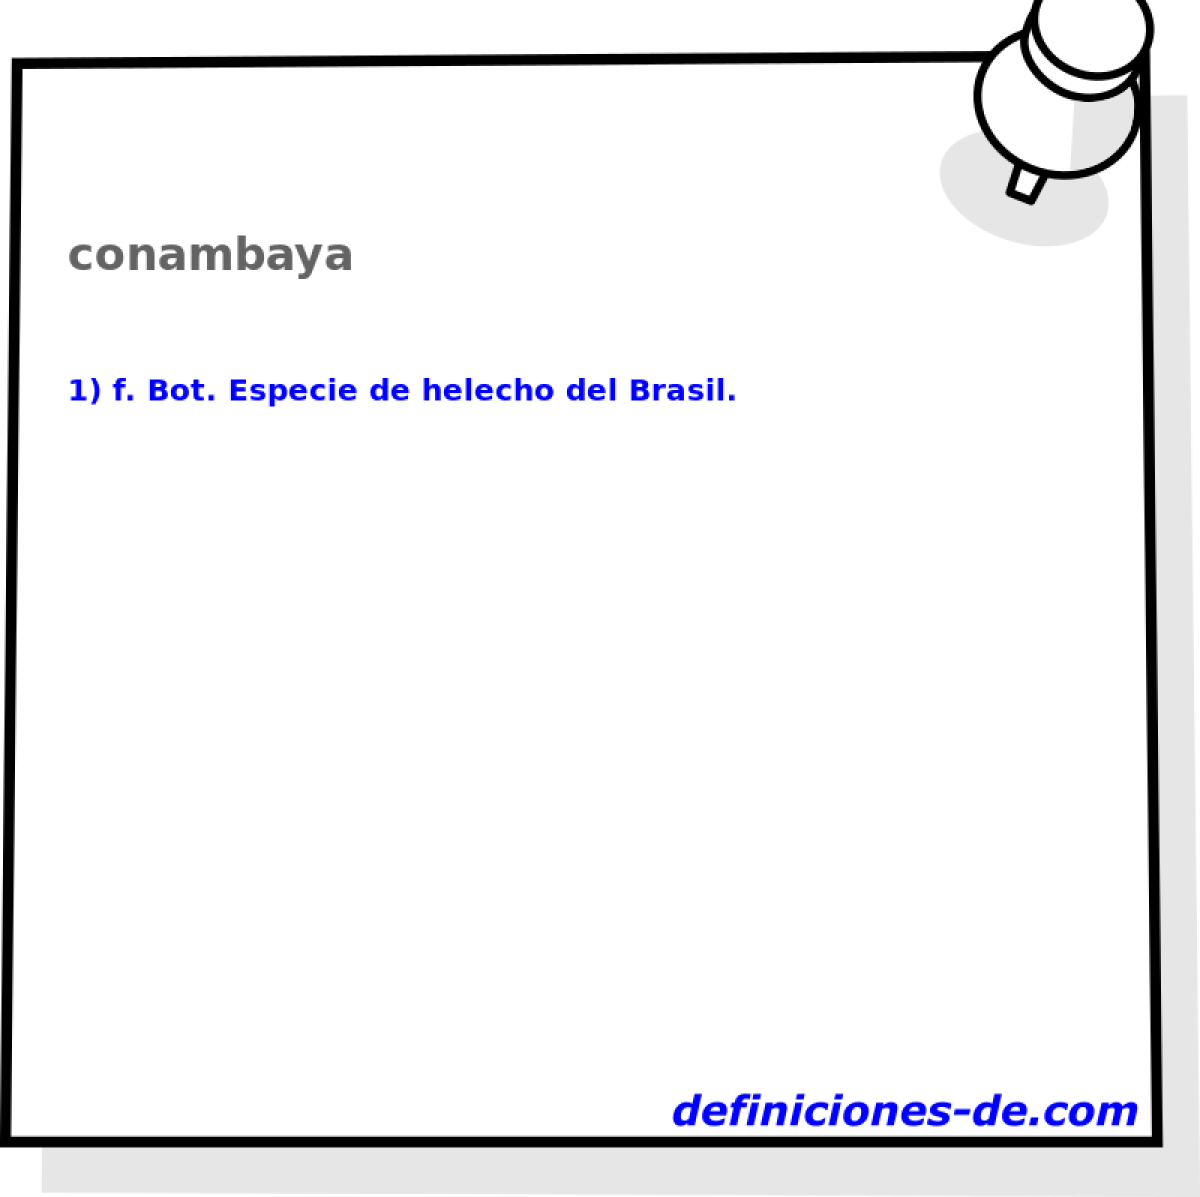 conambaya 